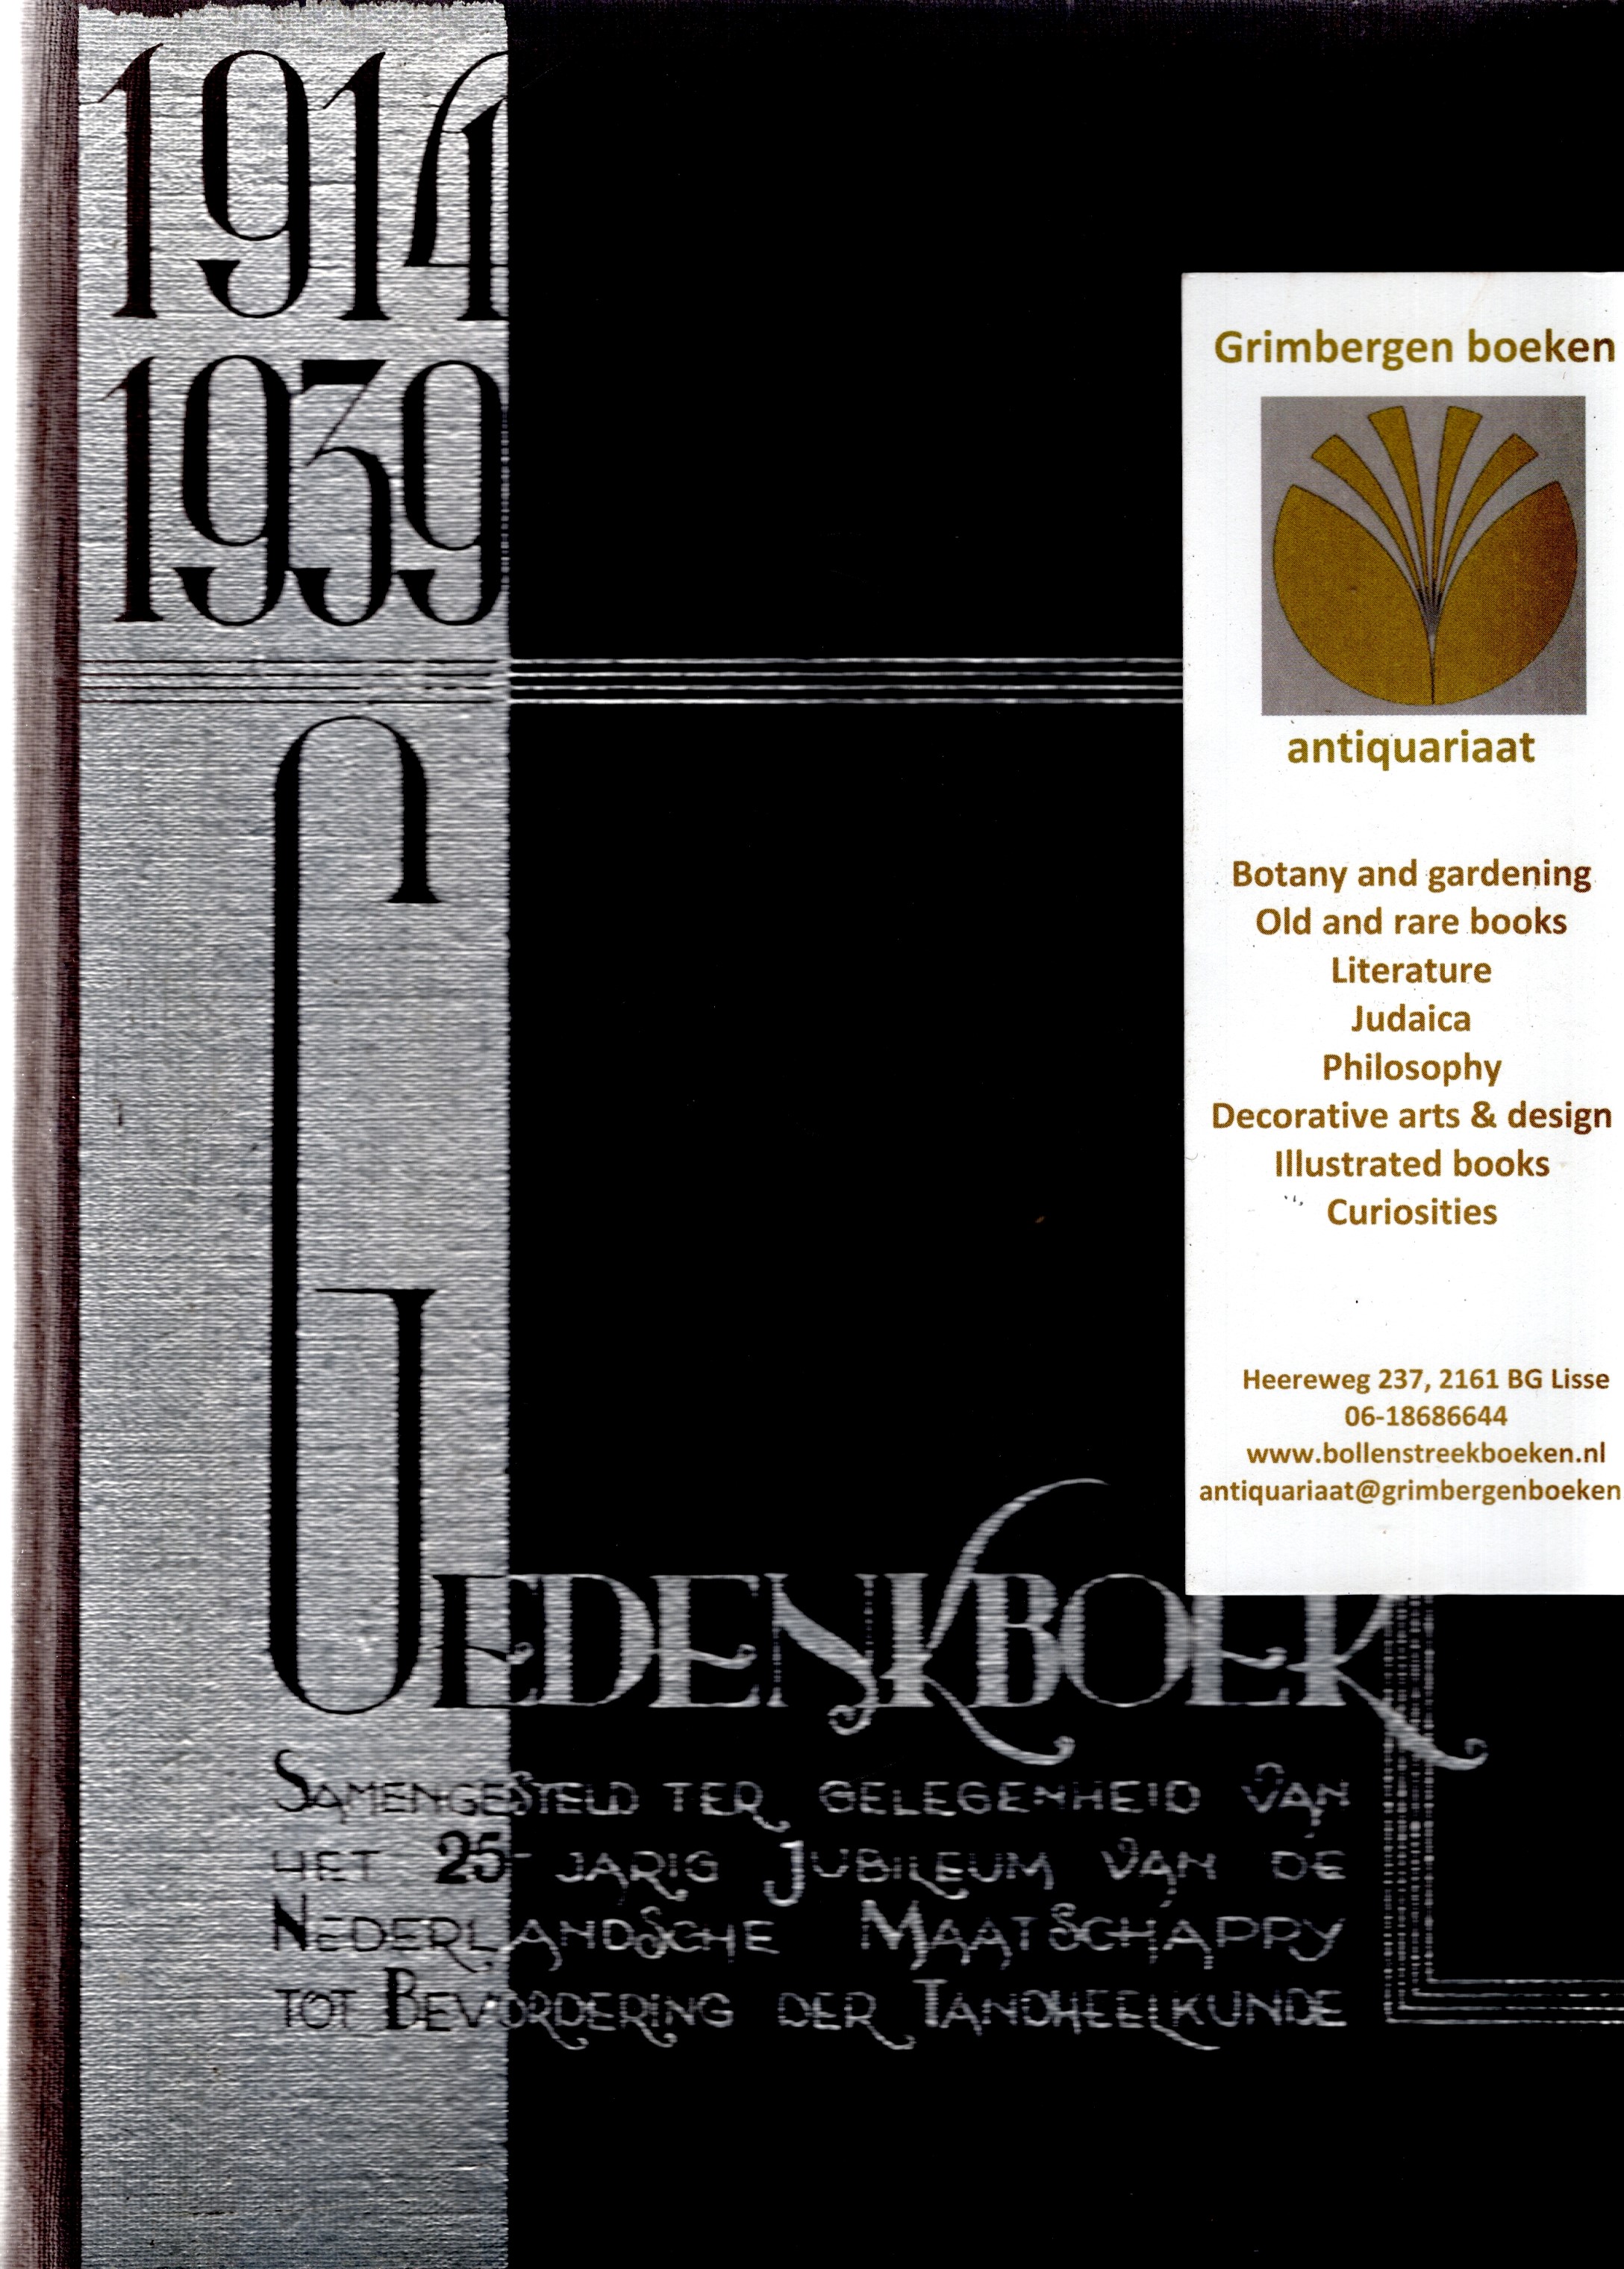 Hasselt, A.L.J.C. van / P.H. Buisman / L. Frank / G.D. Margadant / Ch.F.L. Nord / J.A. Salomons - Gedenkboek samengesteld ter gelegenheid van het 25-jarig bestaan der Nederlandsche Maatschappij tot bevordering der tandheelkunde 1914 - 1939